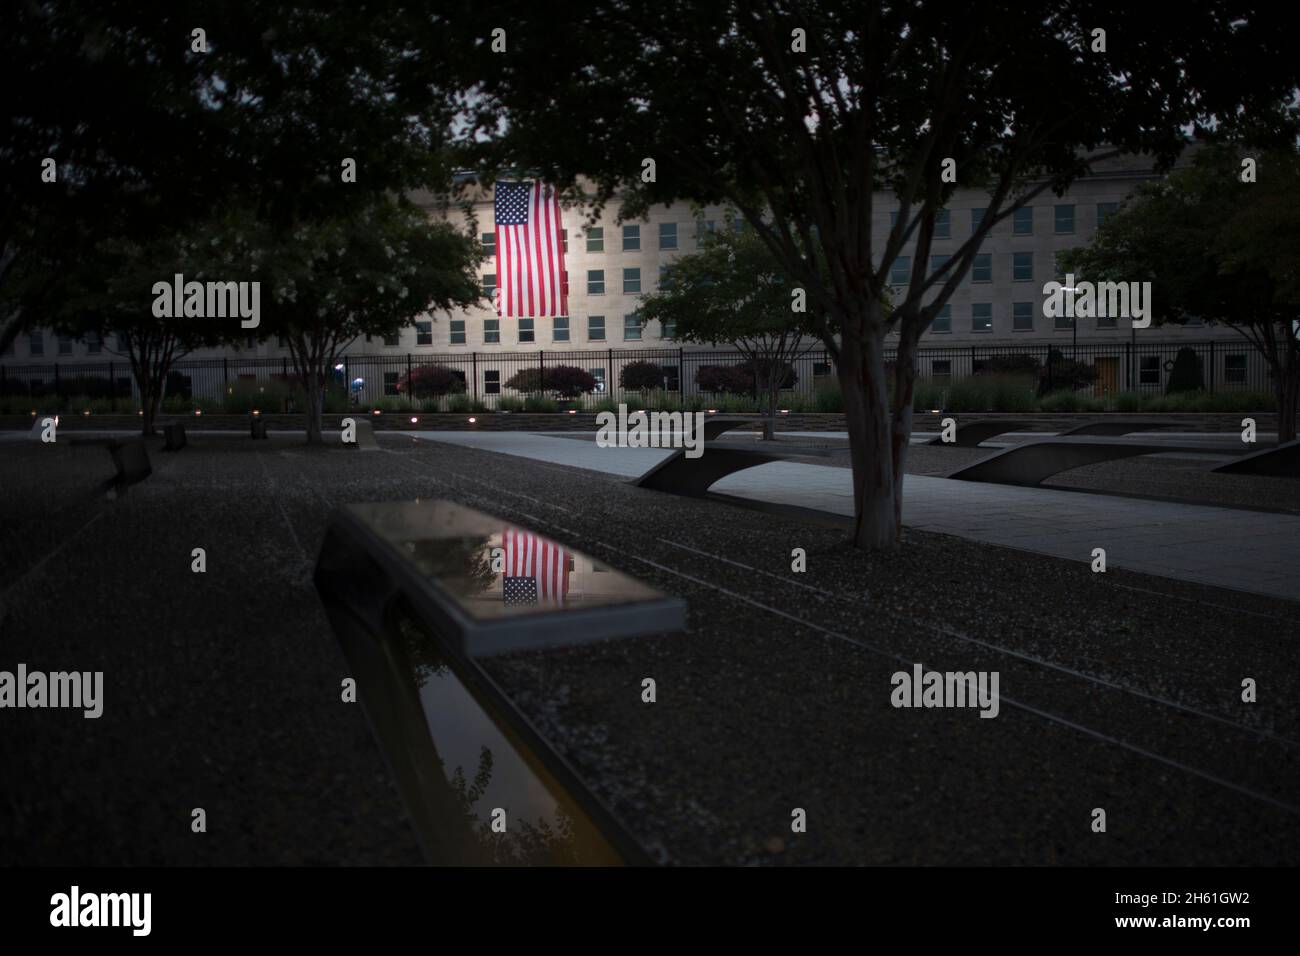 Reportage : un drapeau américain est à l'aube du Pentagone à l'occasion du 19e anniversaire des attentats terroristes du 11 septembre, Washington, D.C., 11 septembre 2020. Banque D'Images